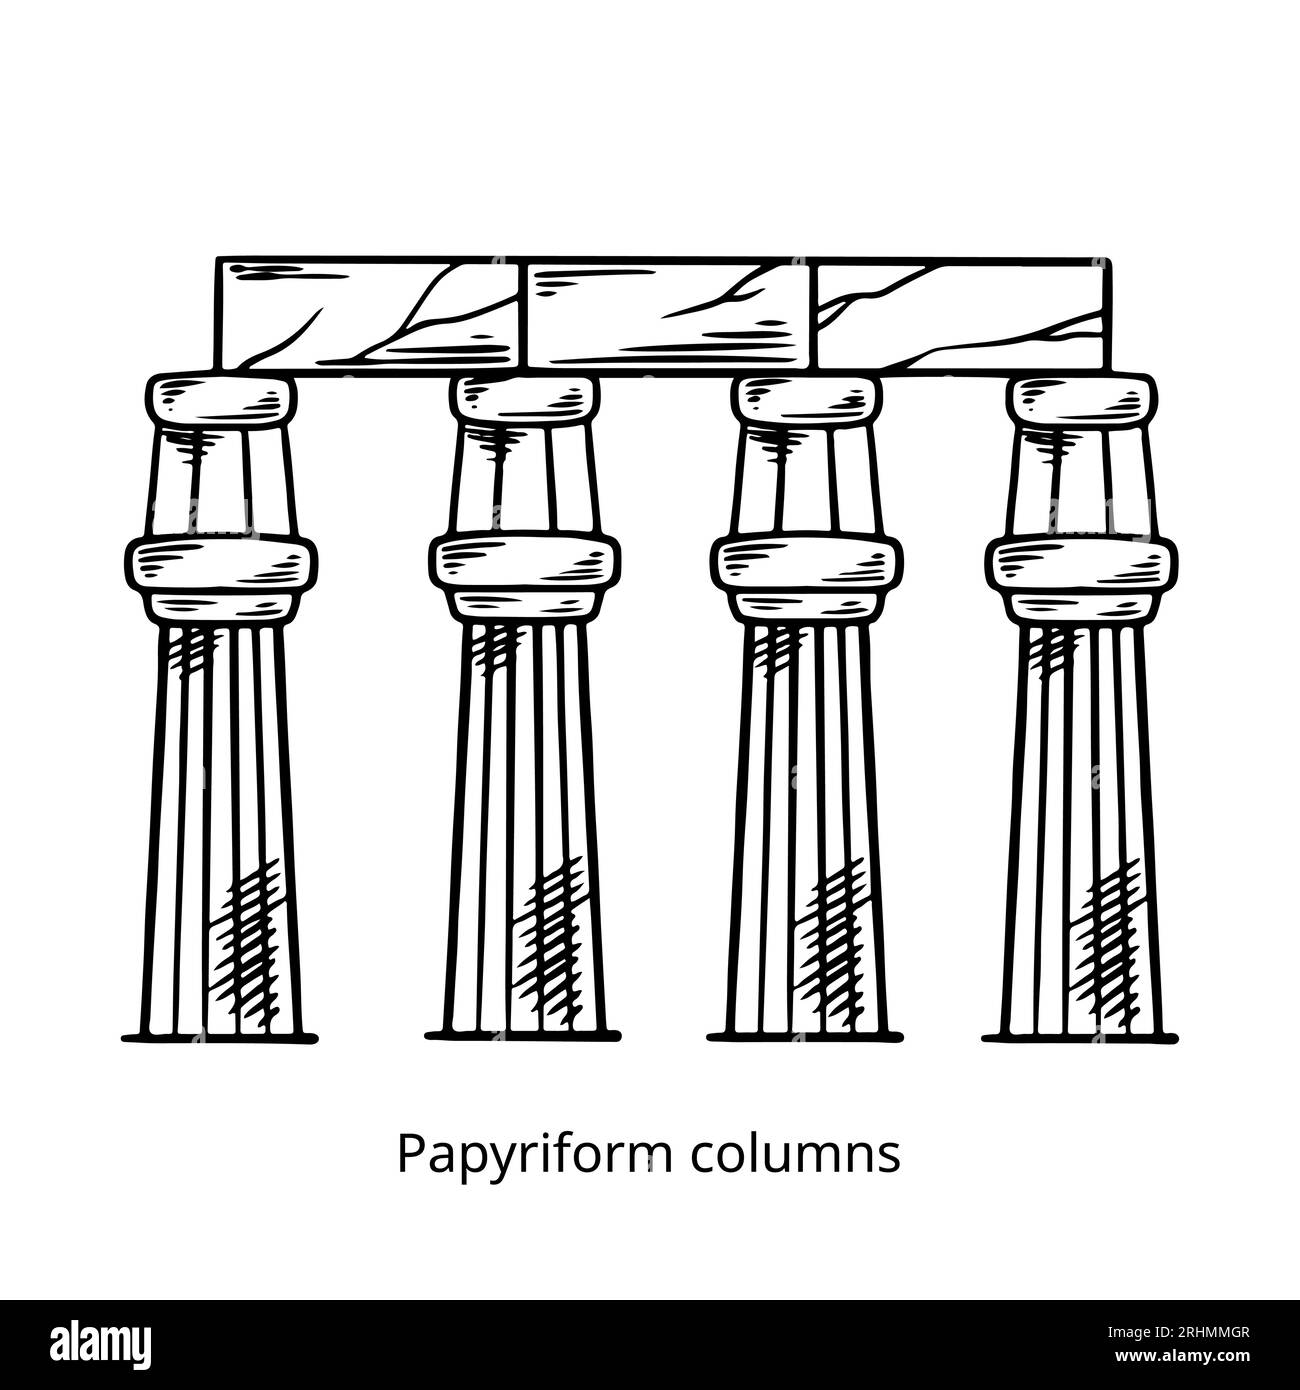 Vecteurs d'esquisse de dessin à la main de colonnes papyriformes, illustration historique bâtiment d'egypte. Illustration de Vecteur